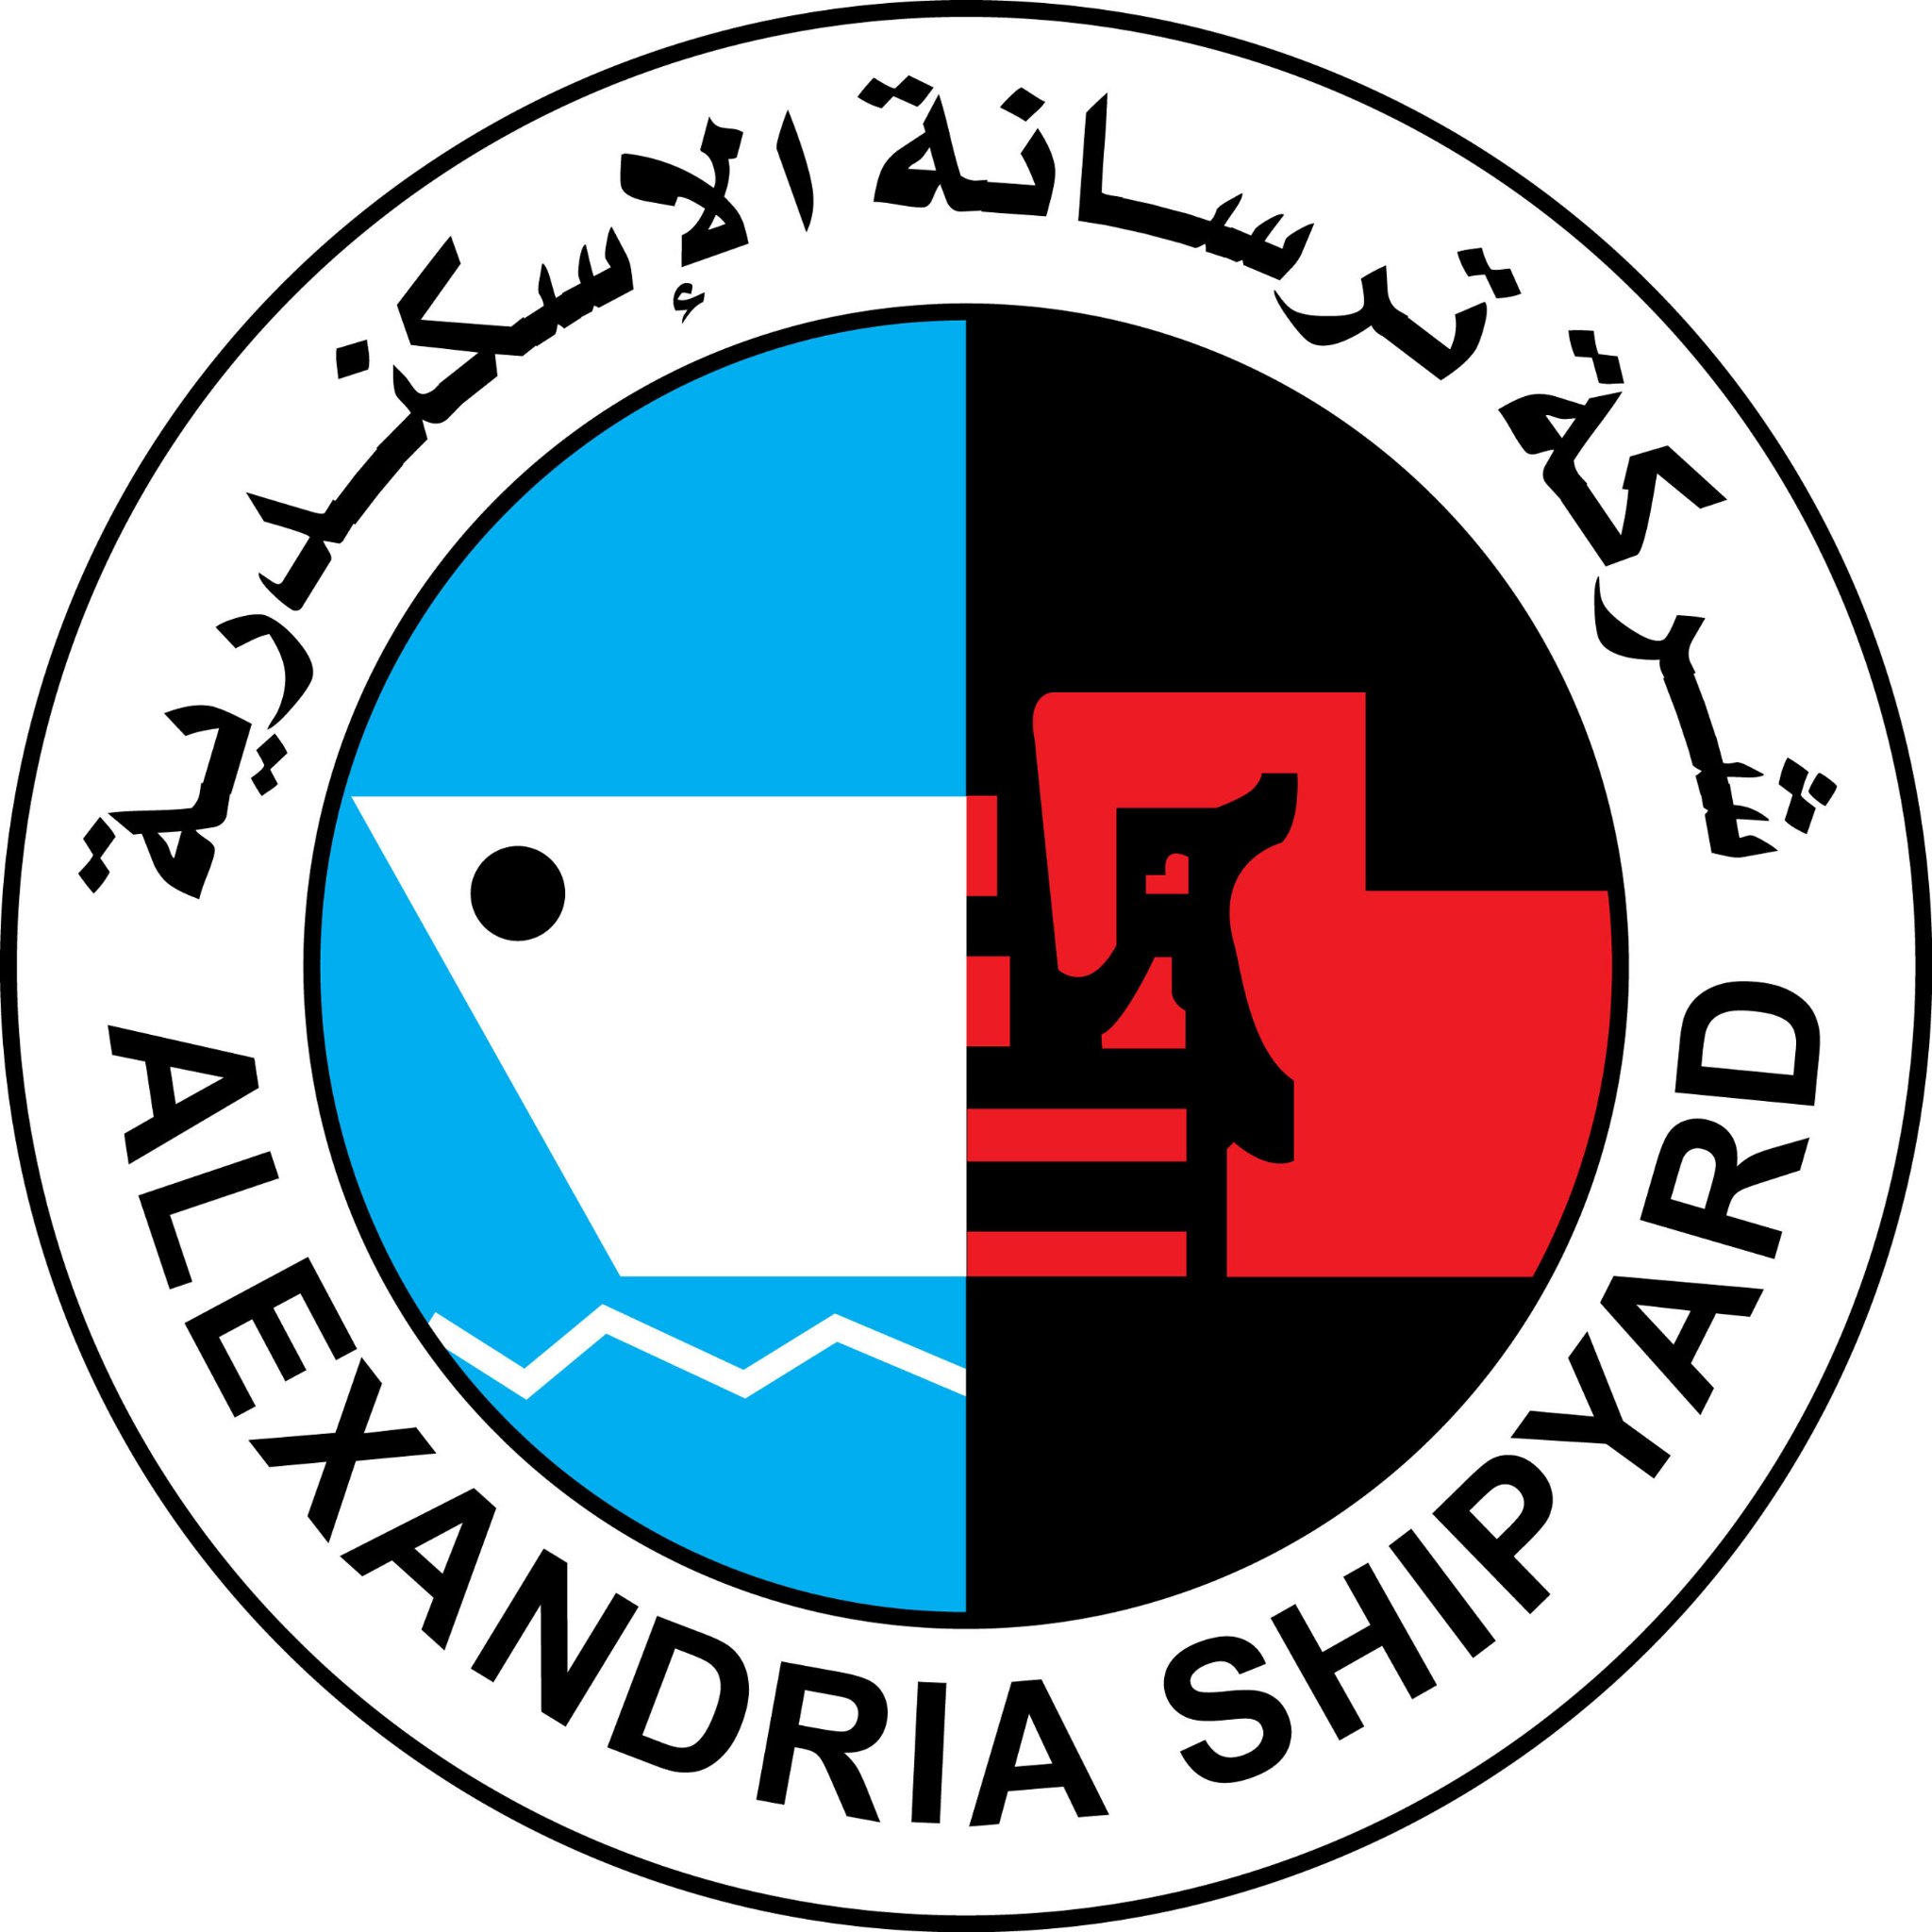 تعد شركة ترسانة الاسكندرية واحده من كبرى قلاع الصناعات الثقيلة ورائدة صناعة بناء وإصلاح السفن بمصروالشرق الأوسط، وقد أنشئت عام 1960 داخل ميناء الإسكندرية الغربي